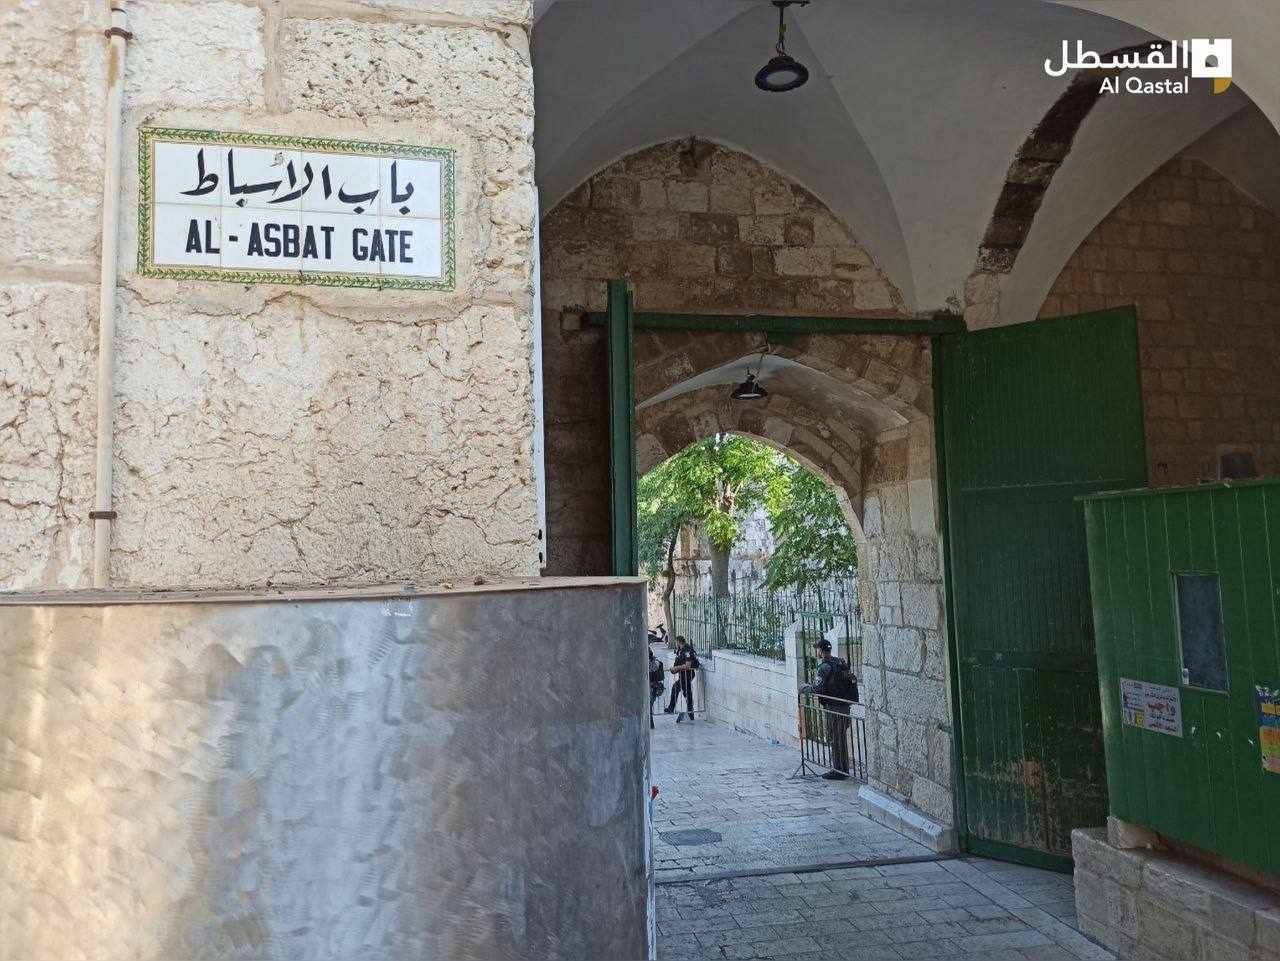 شرطة الاحتلال تستولي على كتب المنهاج الفلسطيني لطلبة المدرسة الشرعية بالقدس